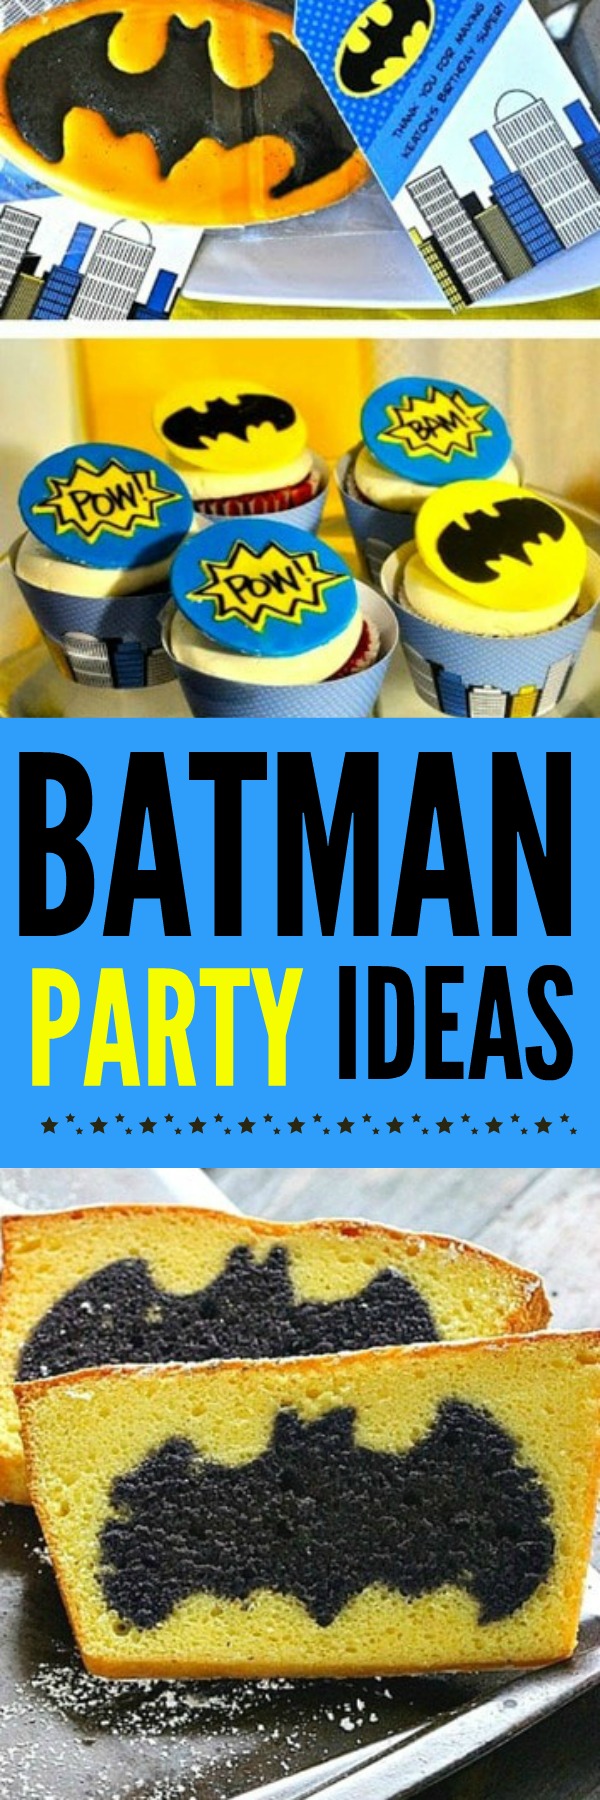 Batman Party Ideas